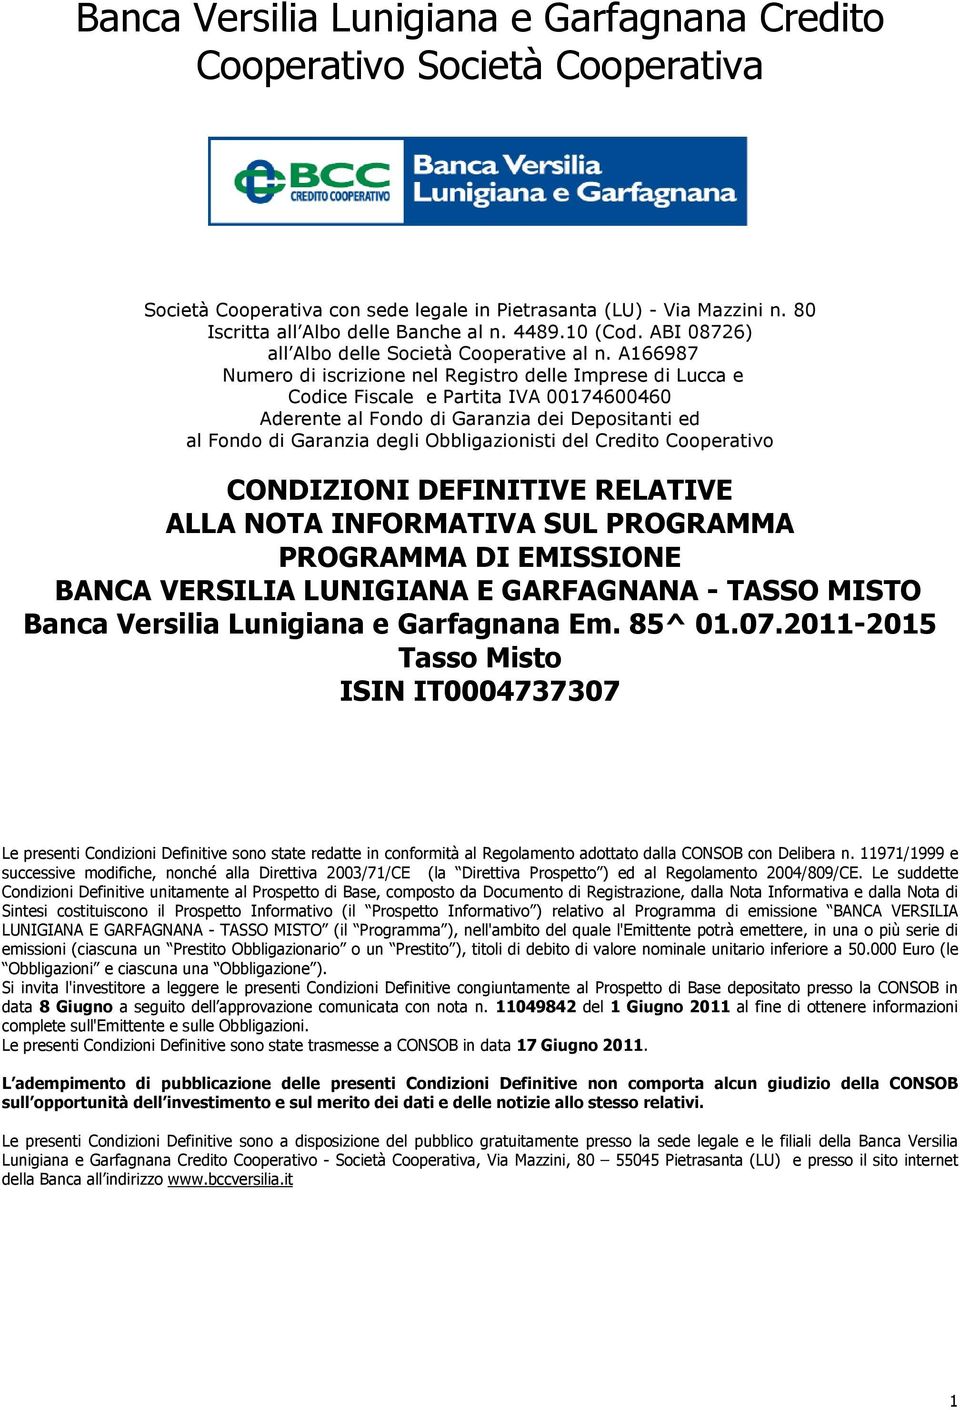 A166987 Numero di iscrizione nel Registro delle Imprese di Lucca e Codice Fiscale e Partita IVA 00174600460 Aderente al Fondo di Garanzia dei Depositanti ed al Fondo di Garanzia degli Obbligazionisti